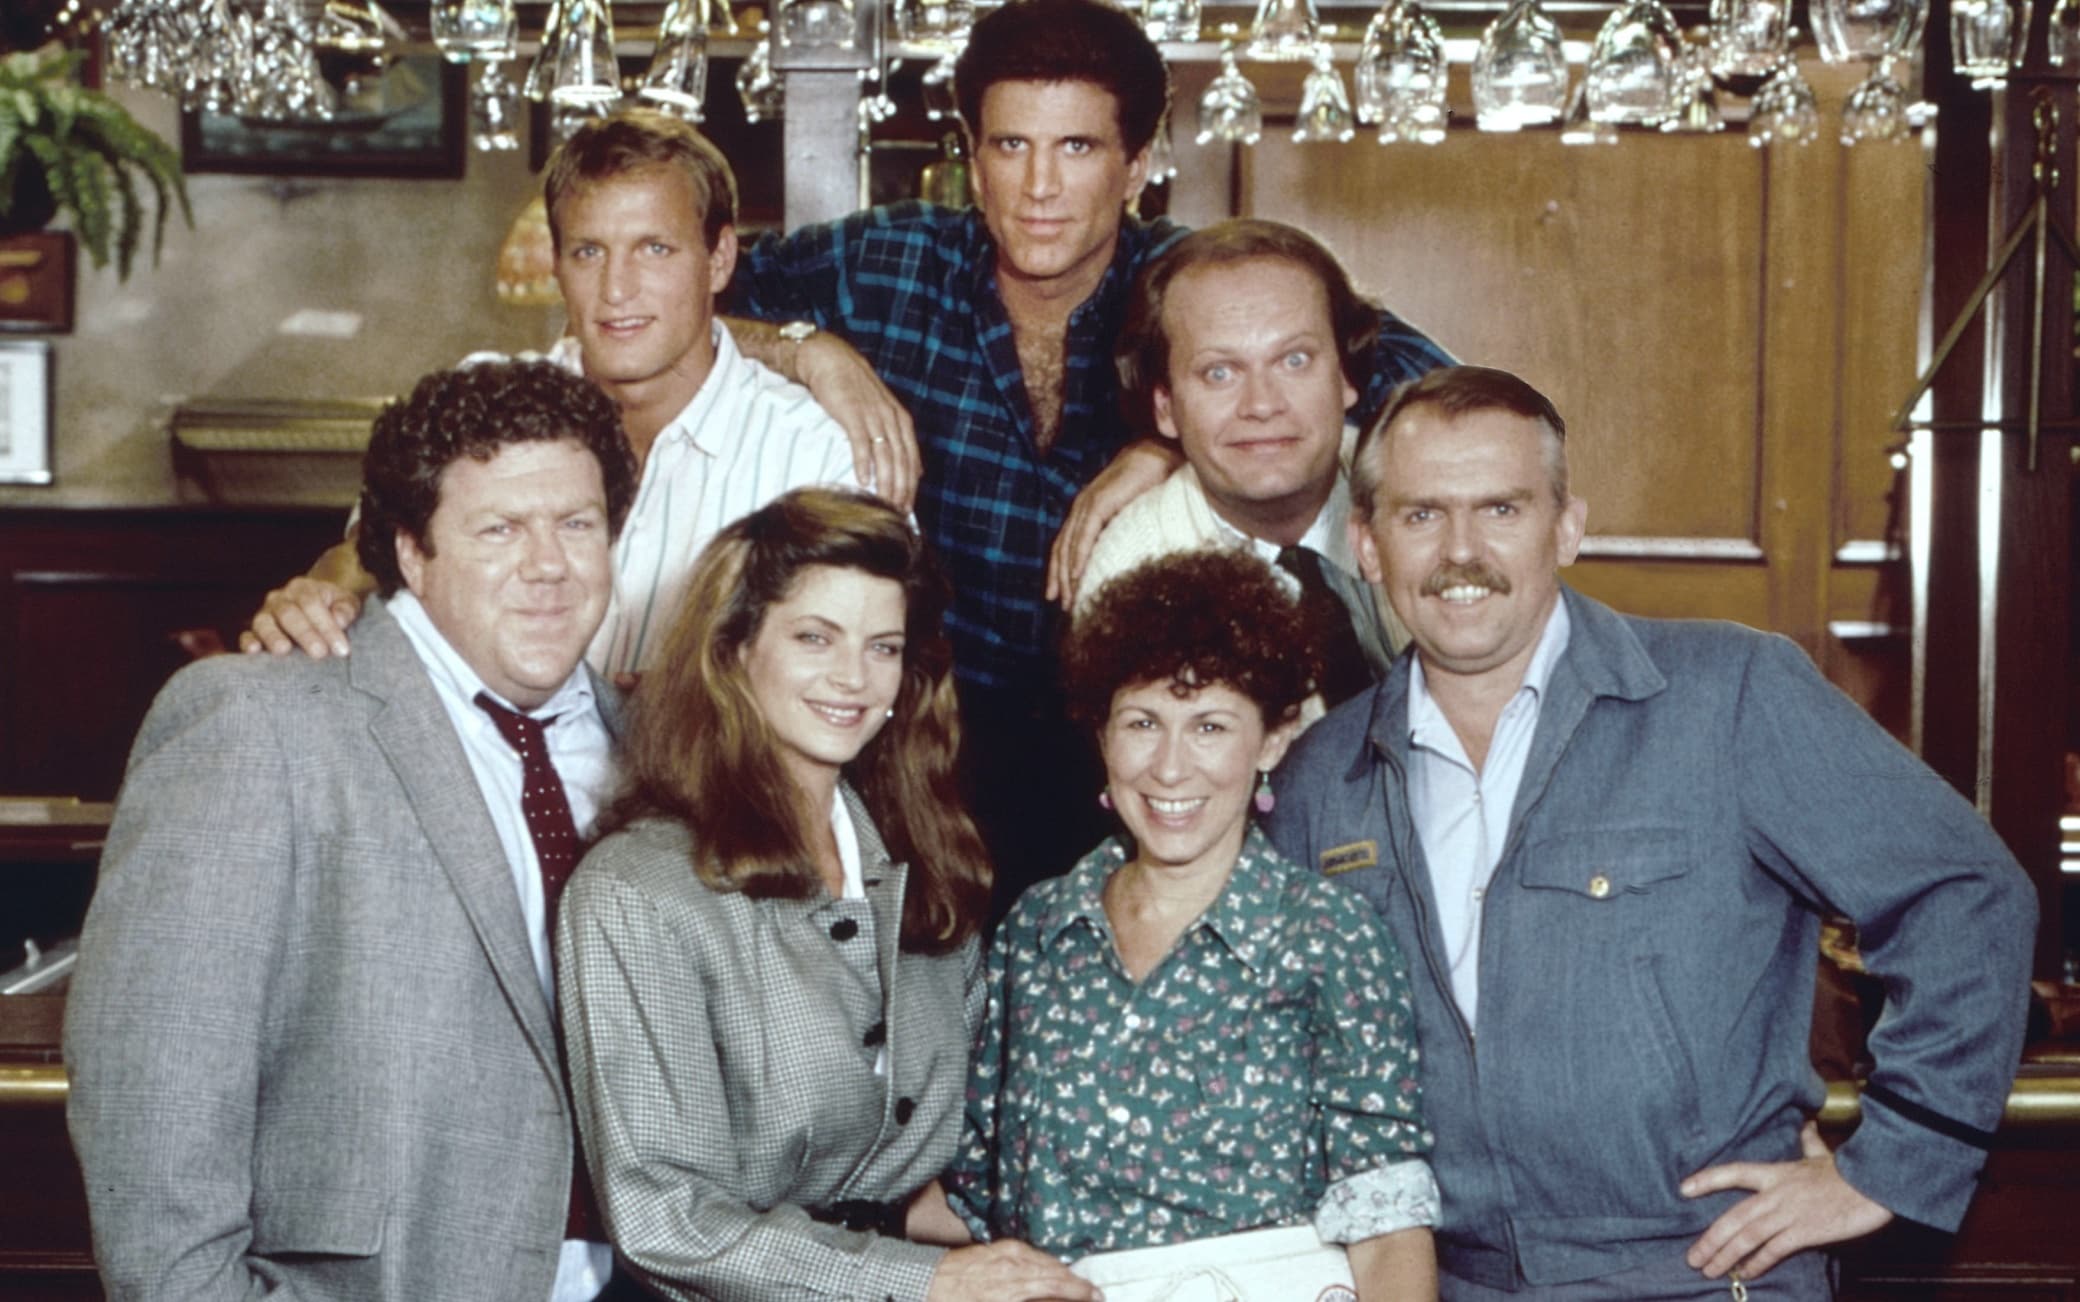 “Cheers” debuttava 40 anni fa negli Usa: storia e curiosità della popolare sitcom